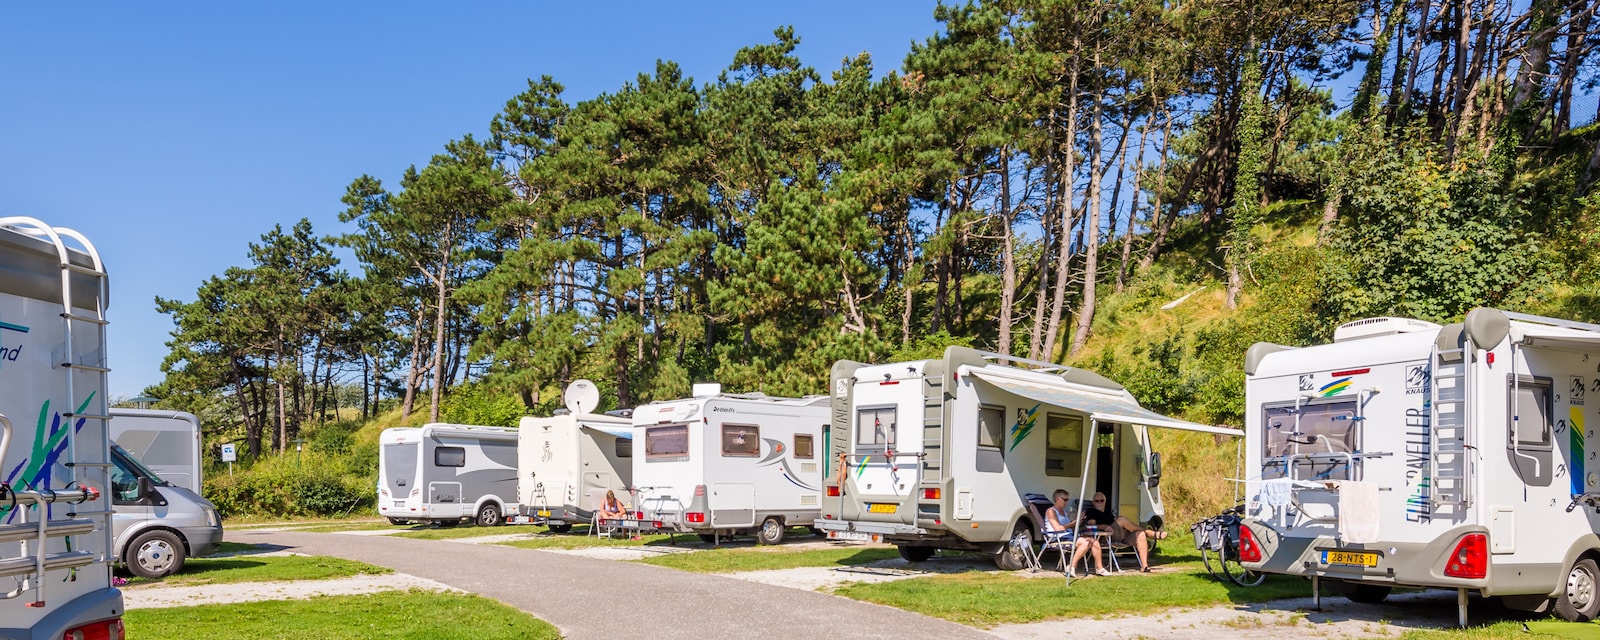 Kustpark Egmond aan Zee - Comfort Camper